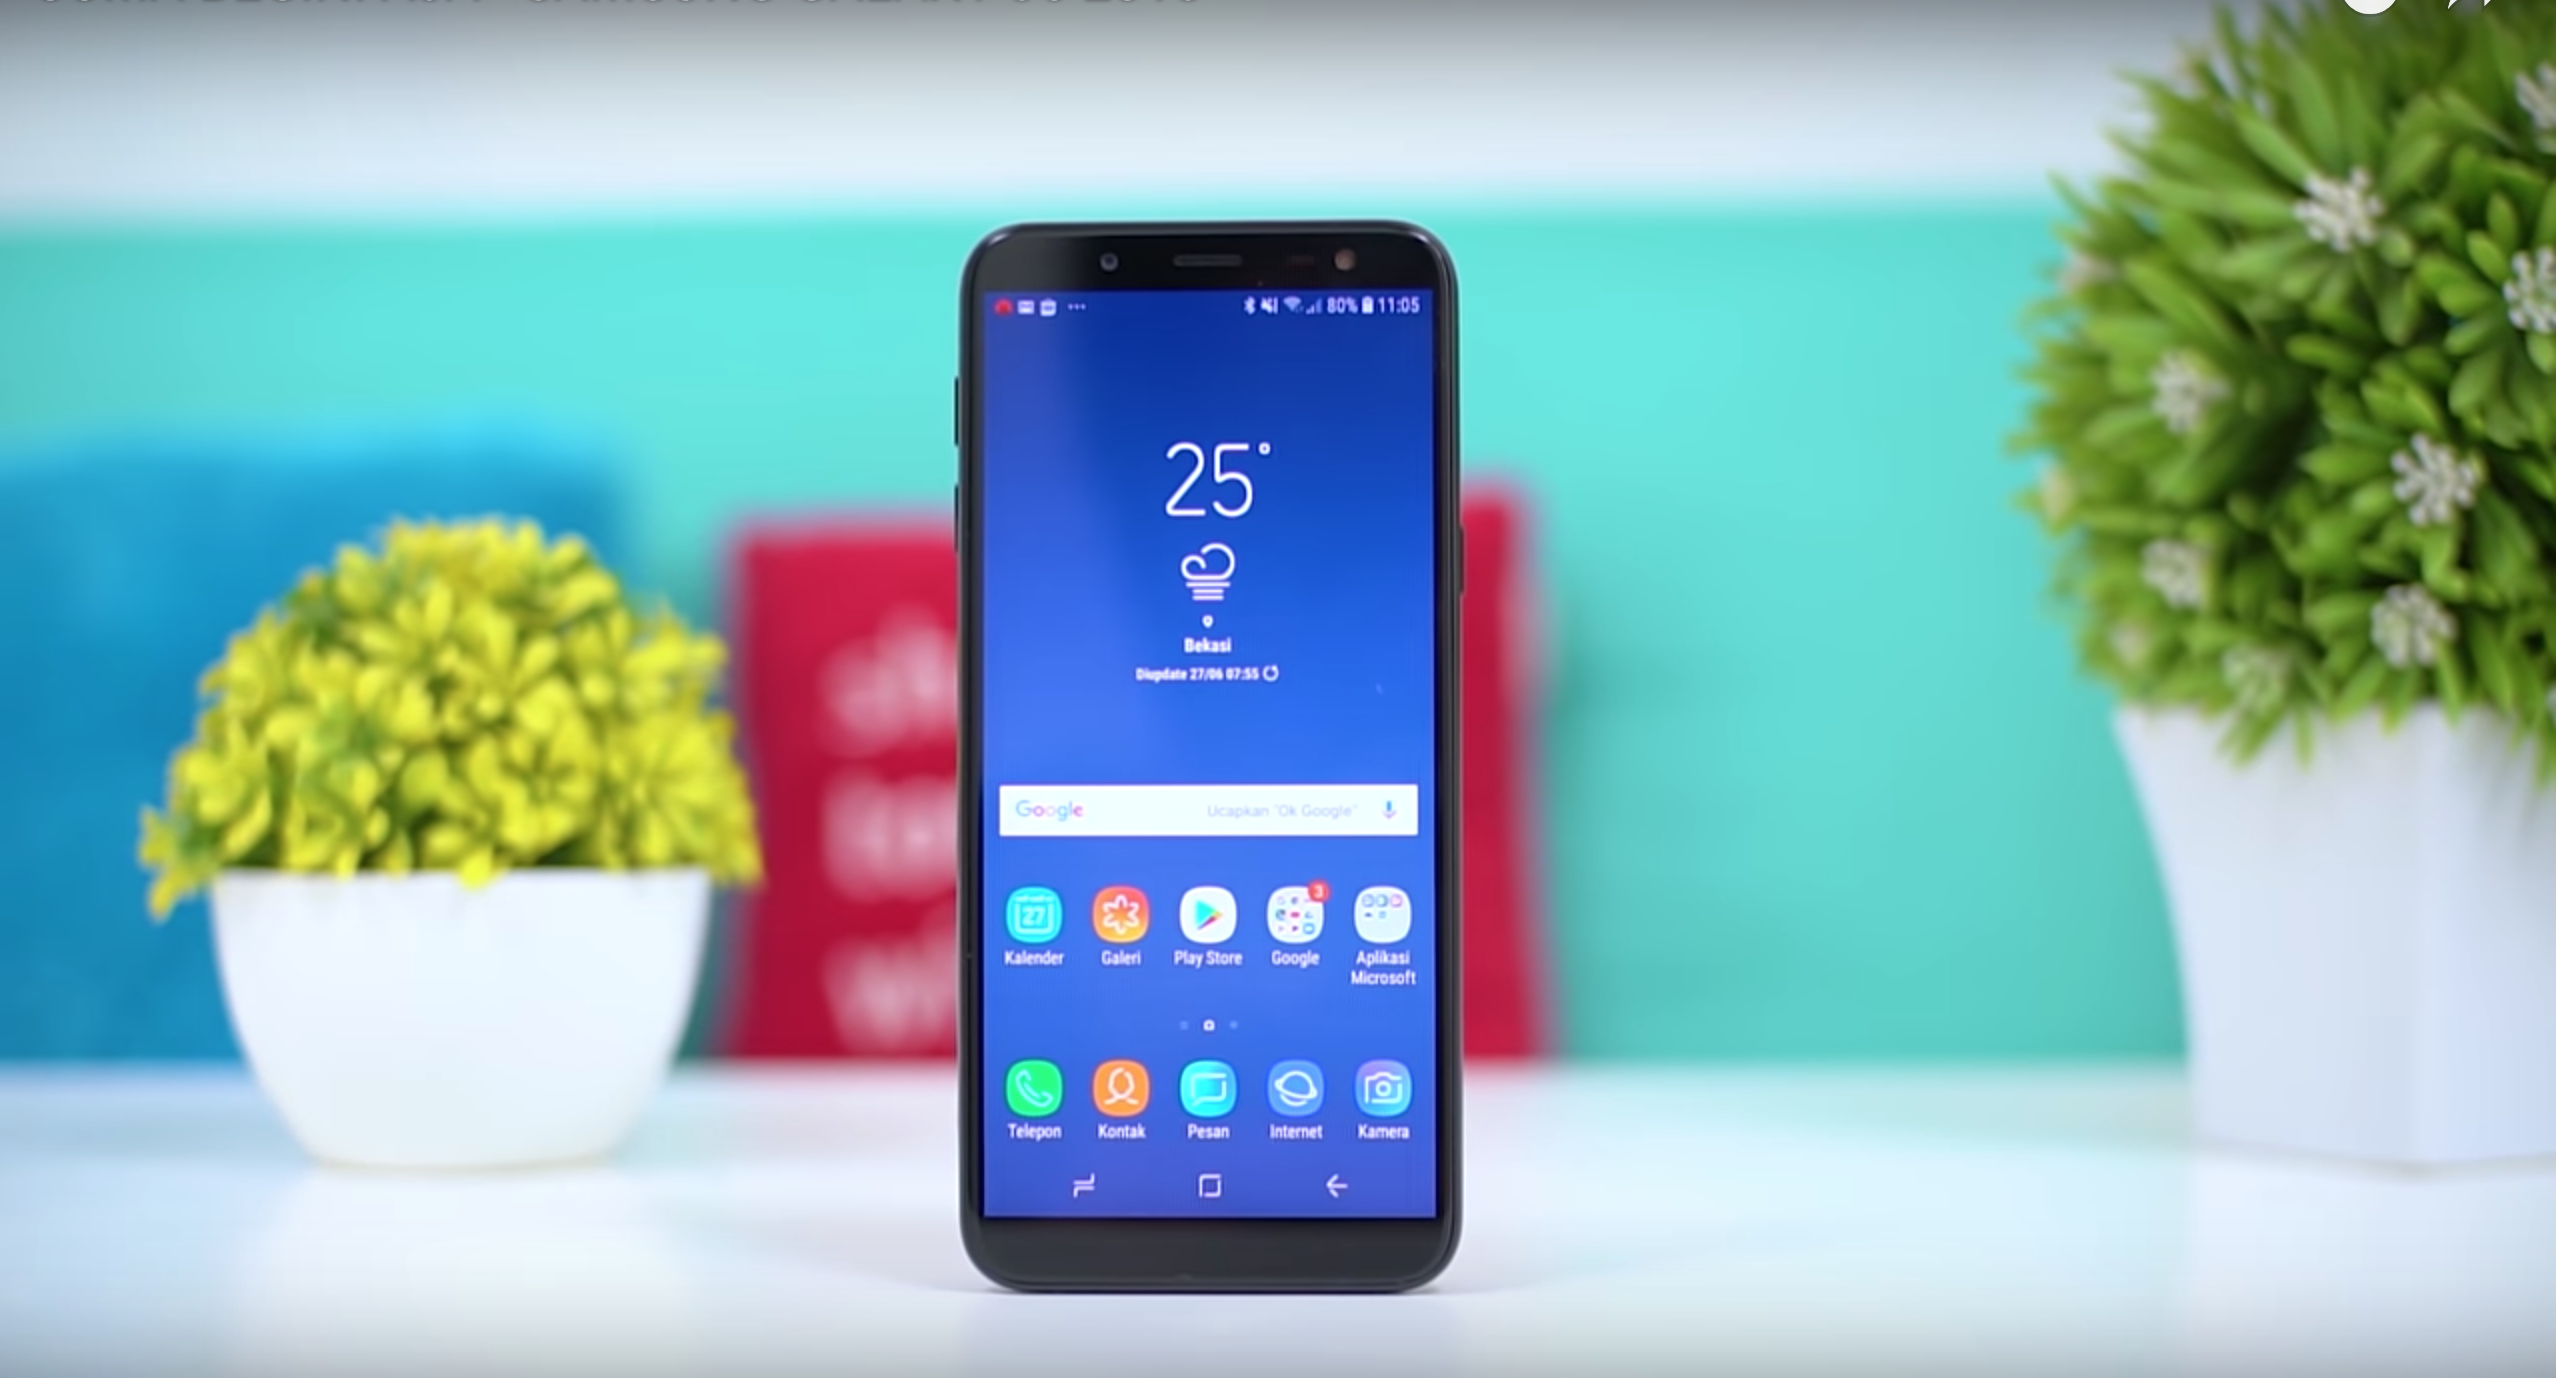 Samsung Galaxy J6 (2018) älypuhelin - hyvät ja huonot puolet